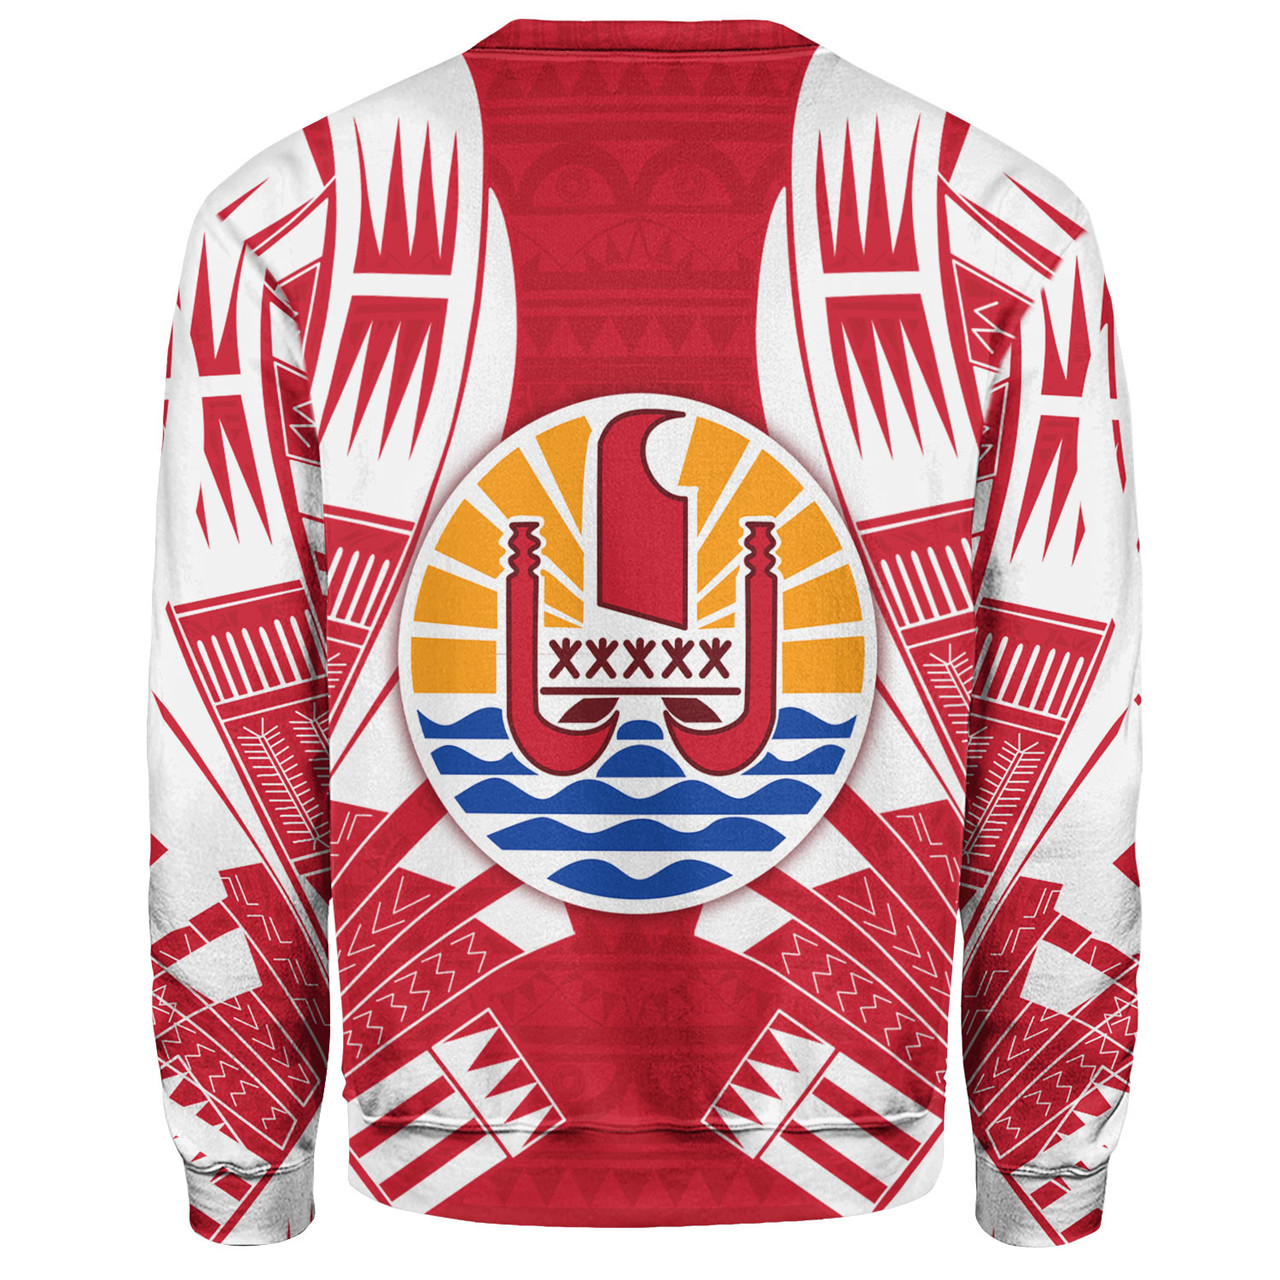 Tahiti Custom Personalised Sweatshirt Tattoo Style